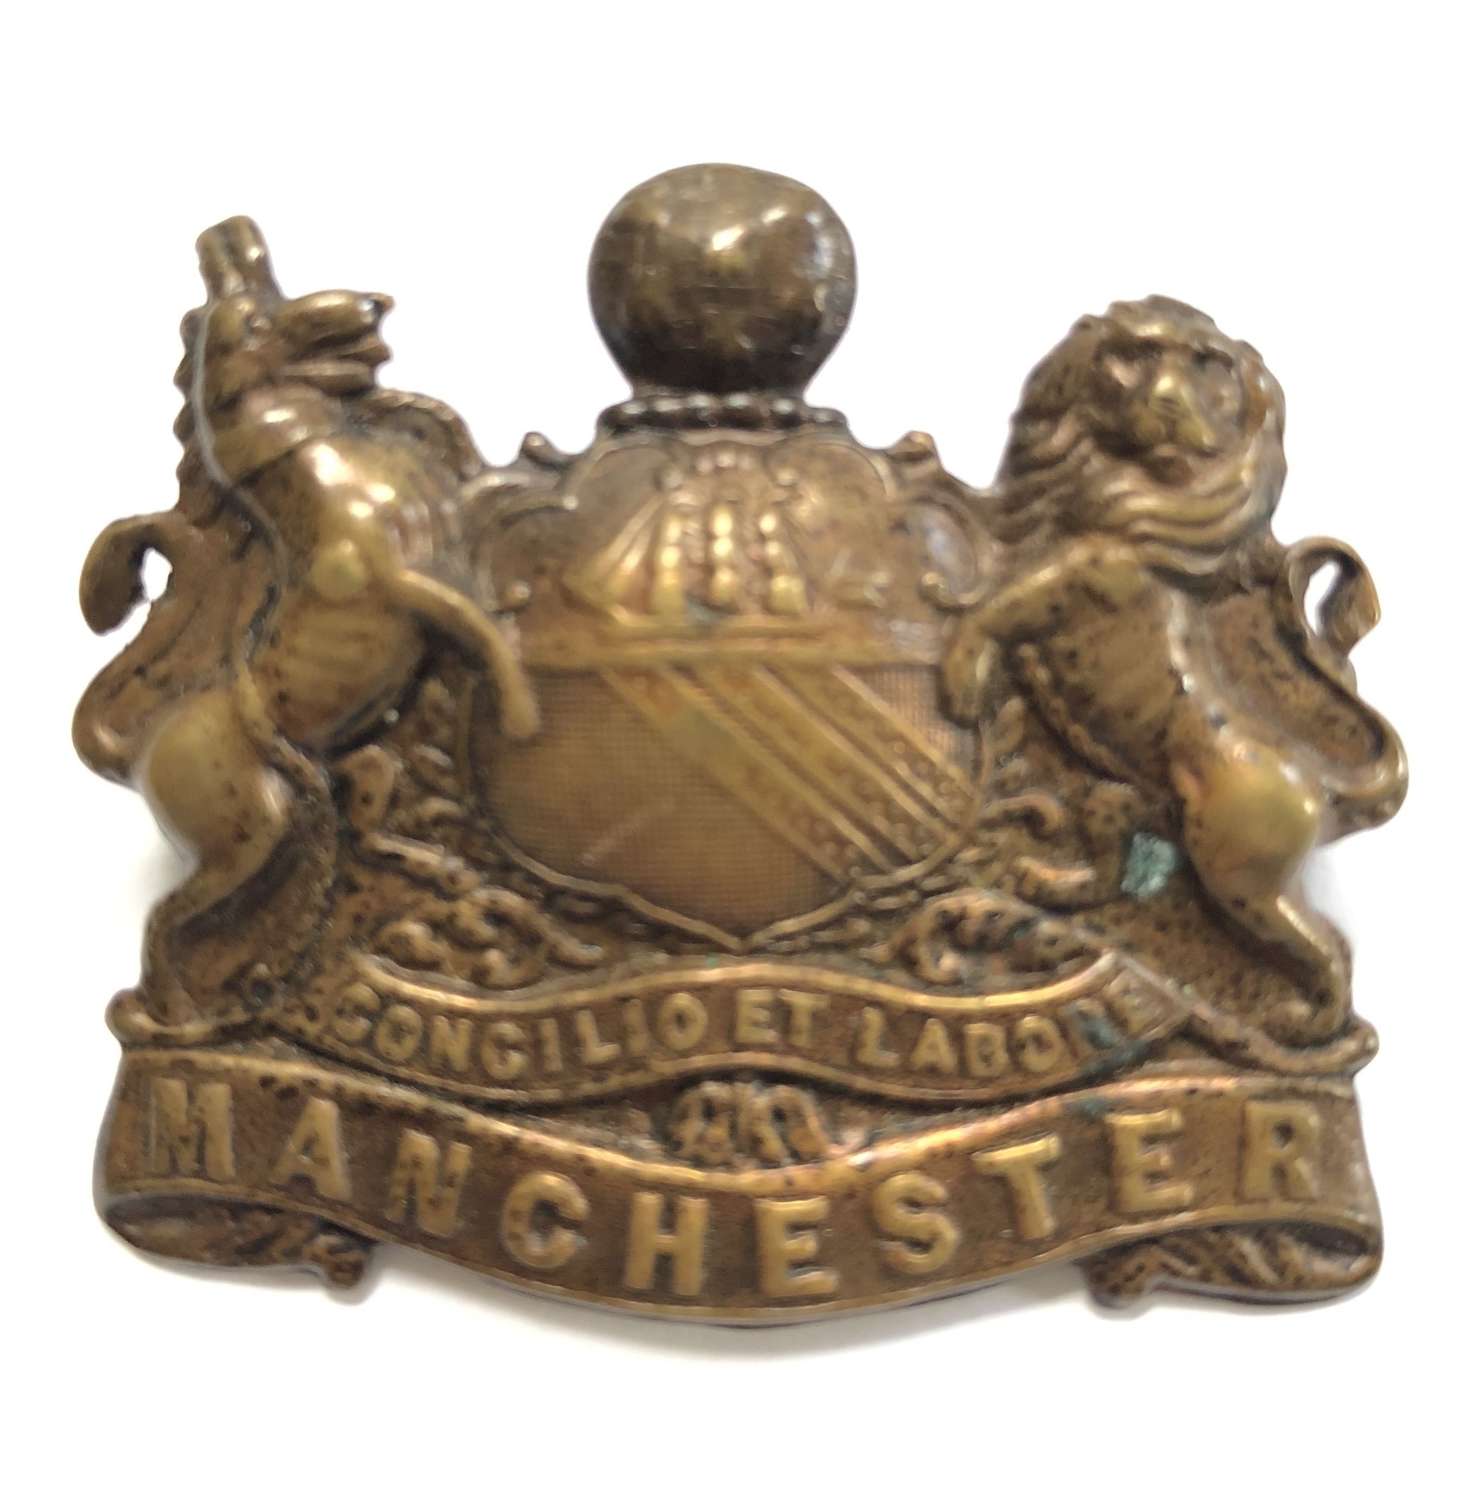 Manchester Regiment ‘Pals’ WW1 ‘Kitchener’s Army’ cap badge